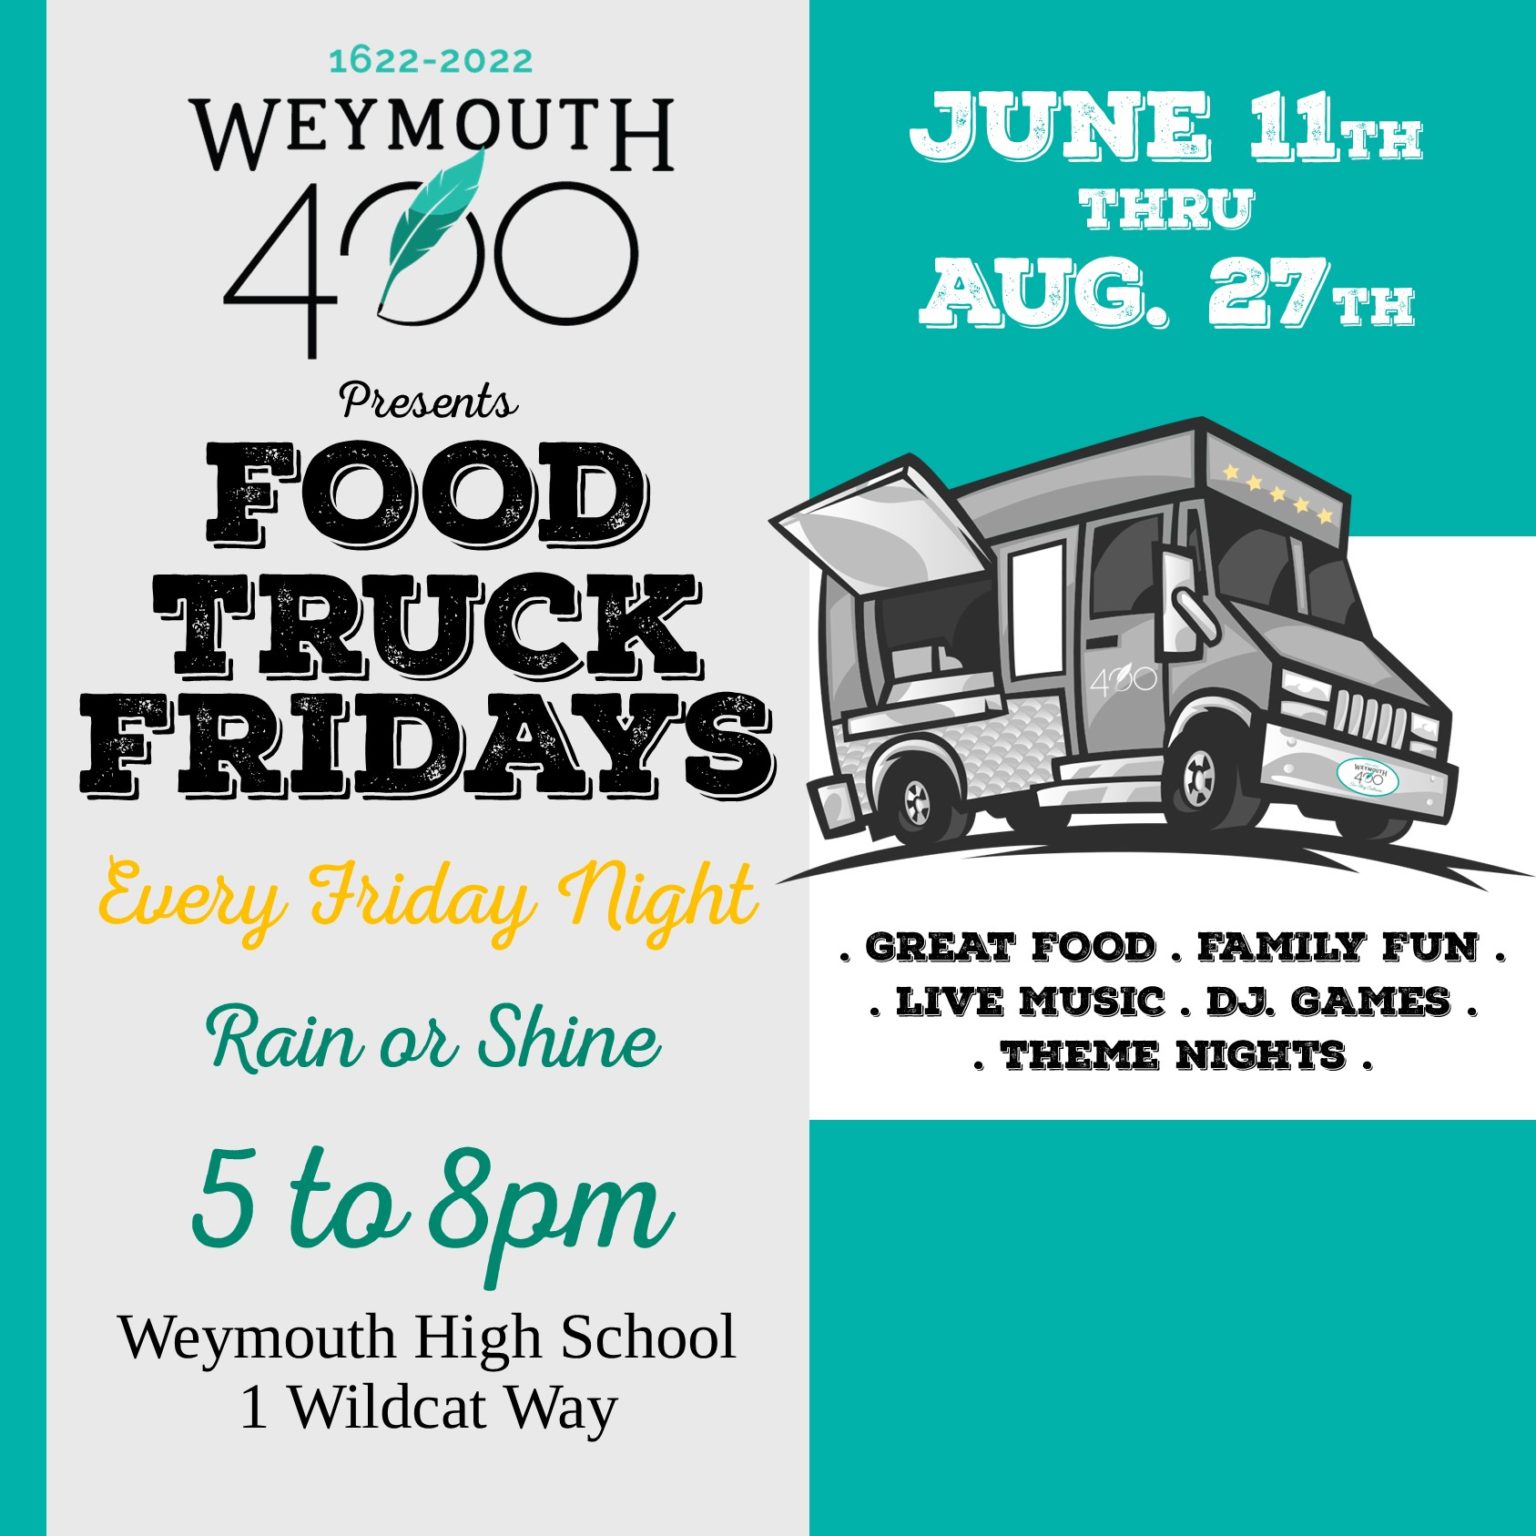 Weymouth 400 Food Truck Fridays 2021 Hockomock Swamp Supper Club